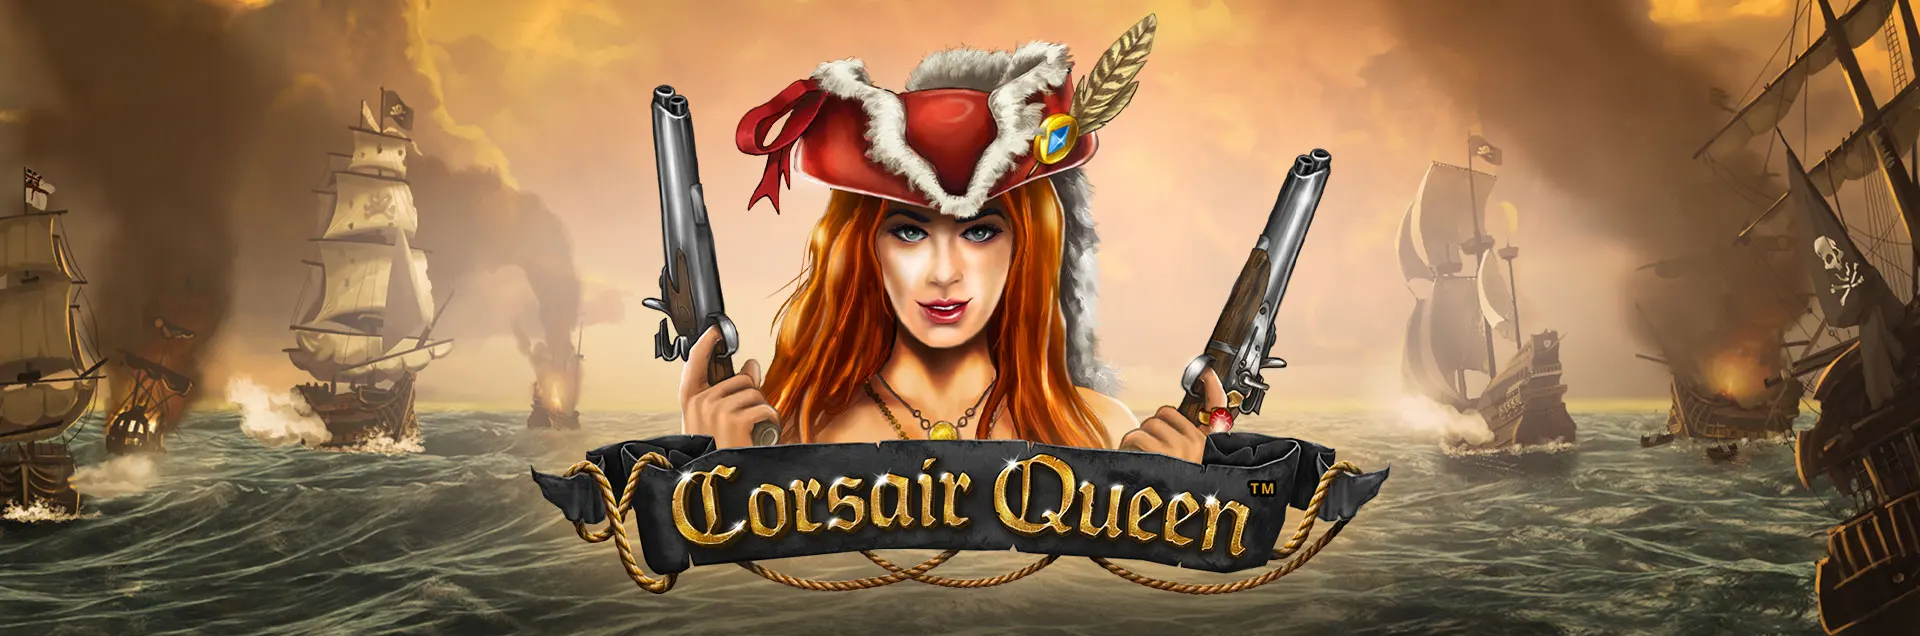 corsair queen